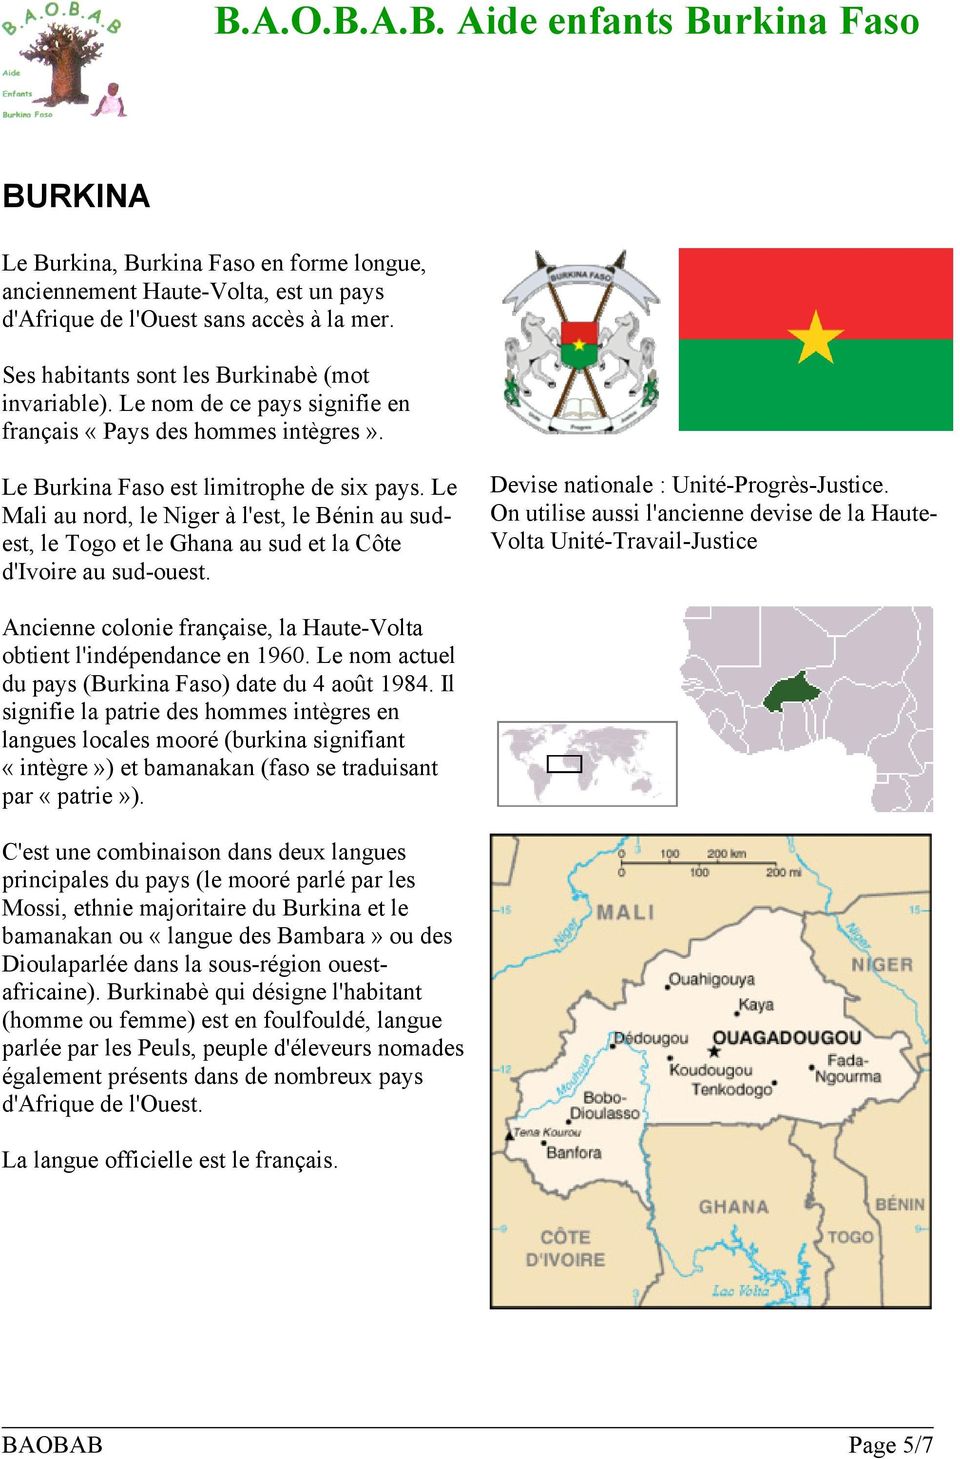 Le Mali au nord, le Niger à l'est, le Bénin au sudest, le Togo et le Ghana au sud et la Côte d'ivoire au sud-ouest. Devise nationale : Unité-Progrès-Justice.